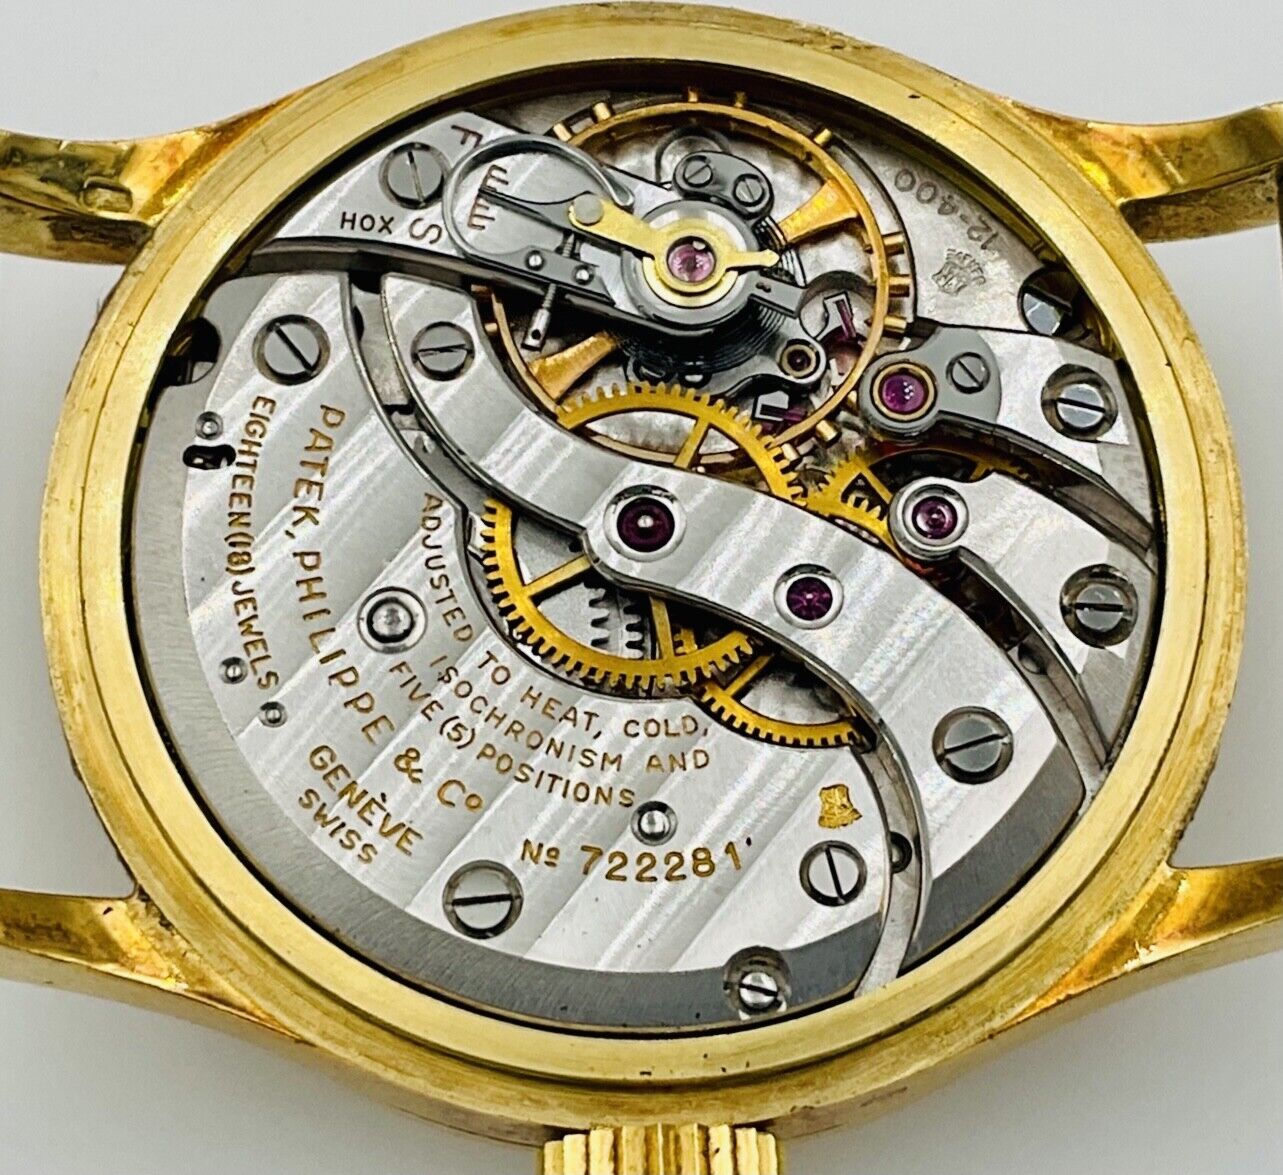 パテック・フィリップメンズ腕時計 ヴィンテージ カラトラバ96J 18Kイエローゴールド手巻き 1954年